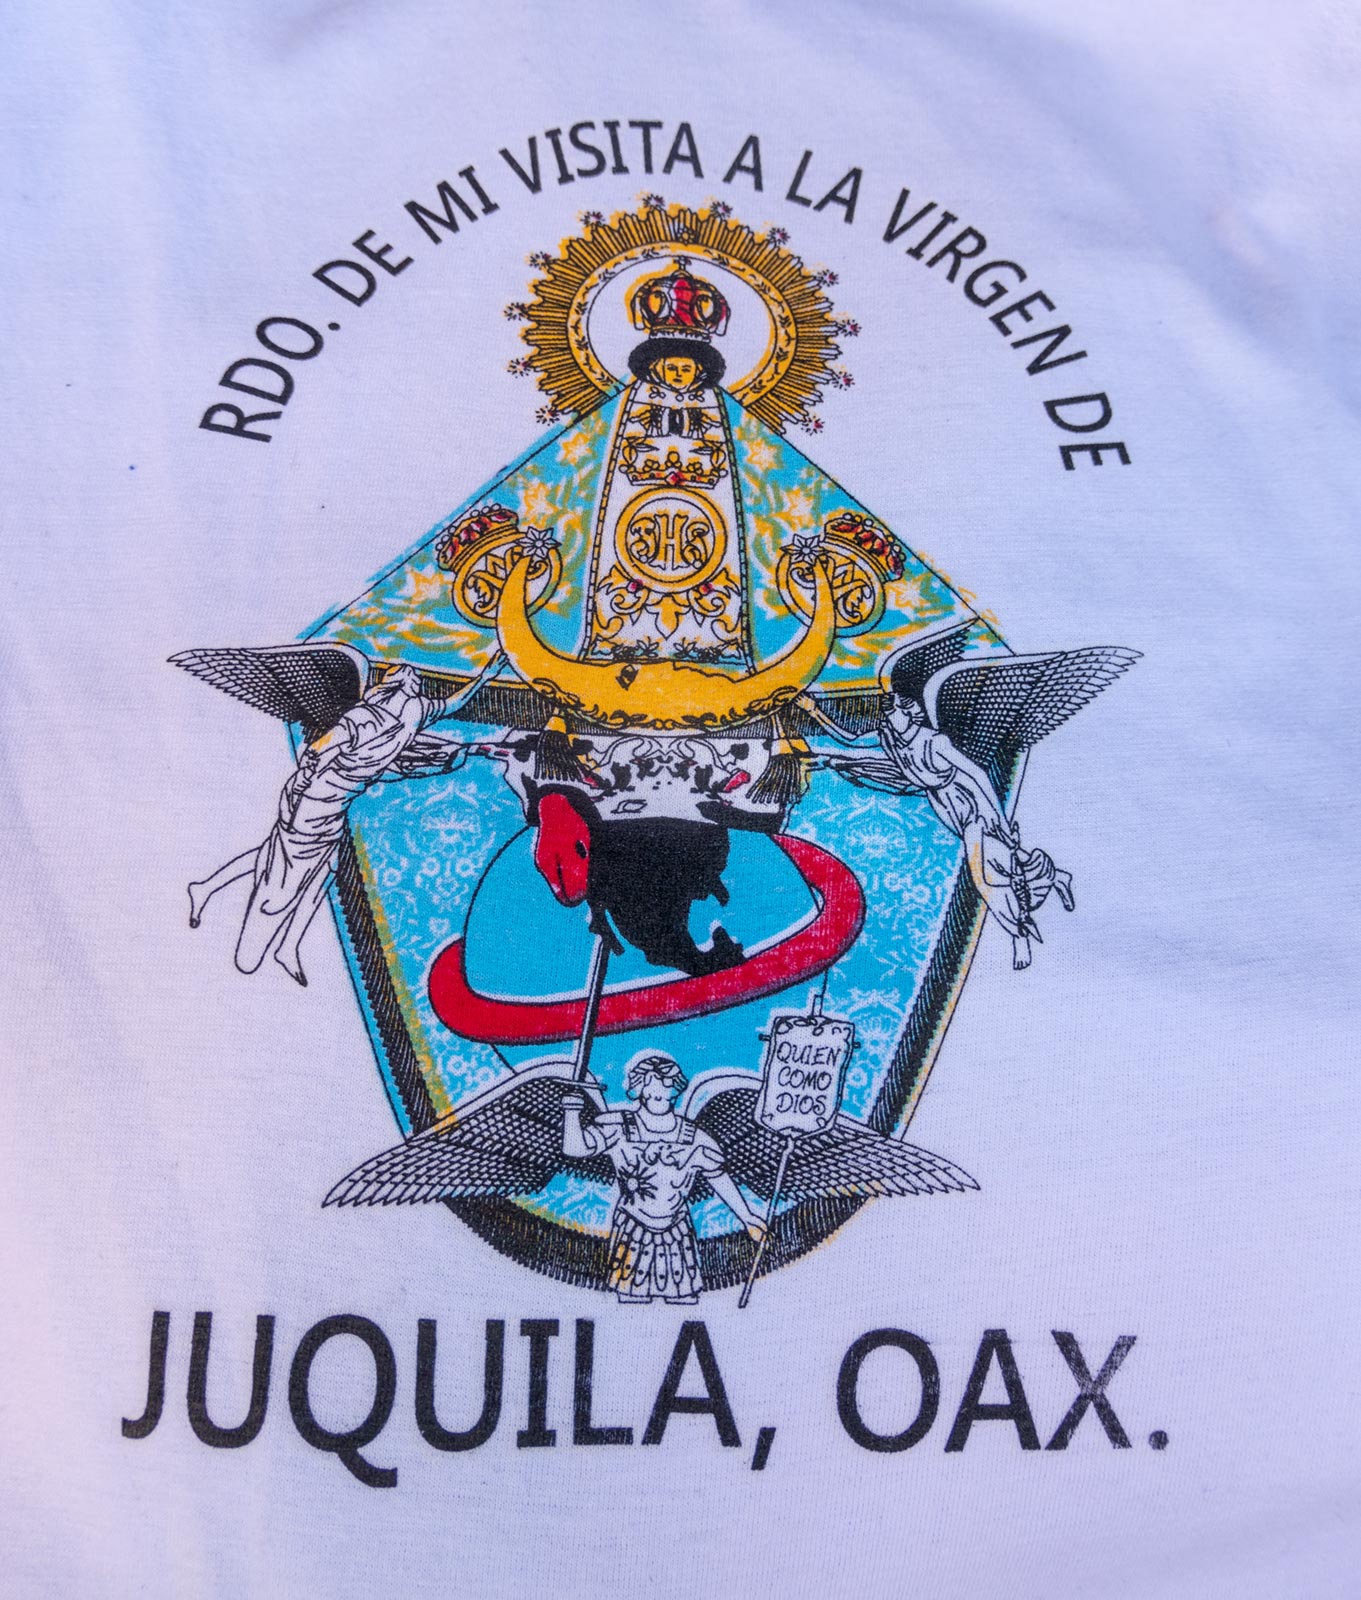 Imagem da estátua milagrosa da Virgem Maria em t-shirt, à venda no mercado perto da Igreja da Virgem Maria, Juquila